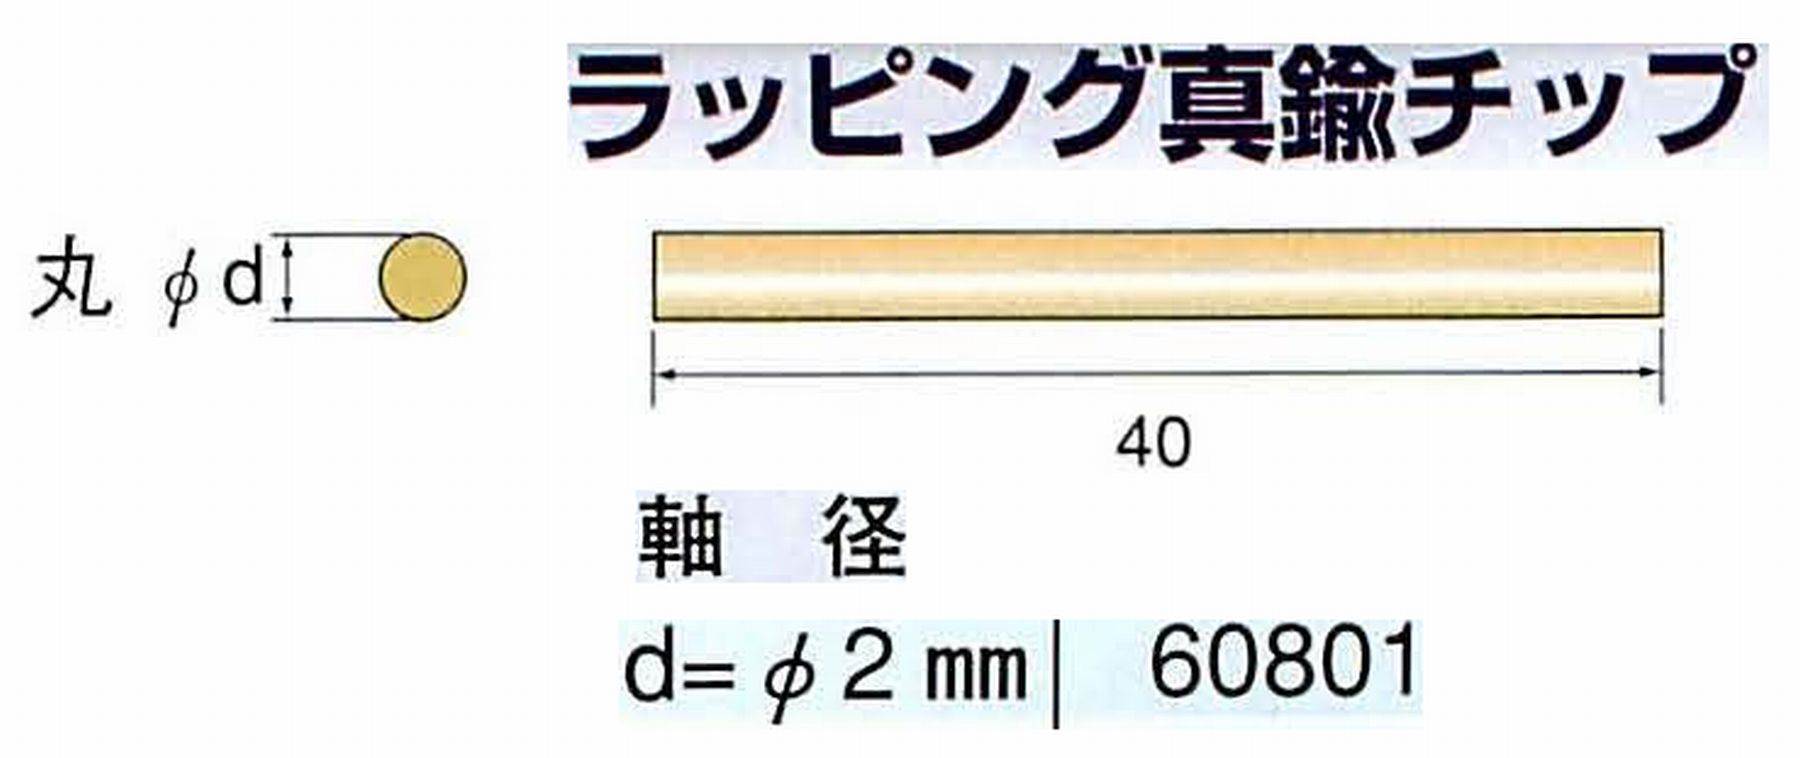 ナカニシ/NAKANISHI 超音波研磨装置 シーナスneo/シーナス専用工具 ラッピング真鍮チップ 丸 60801